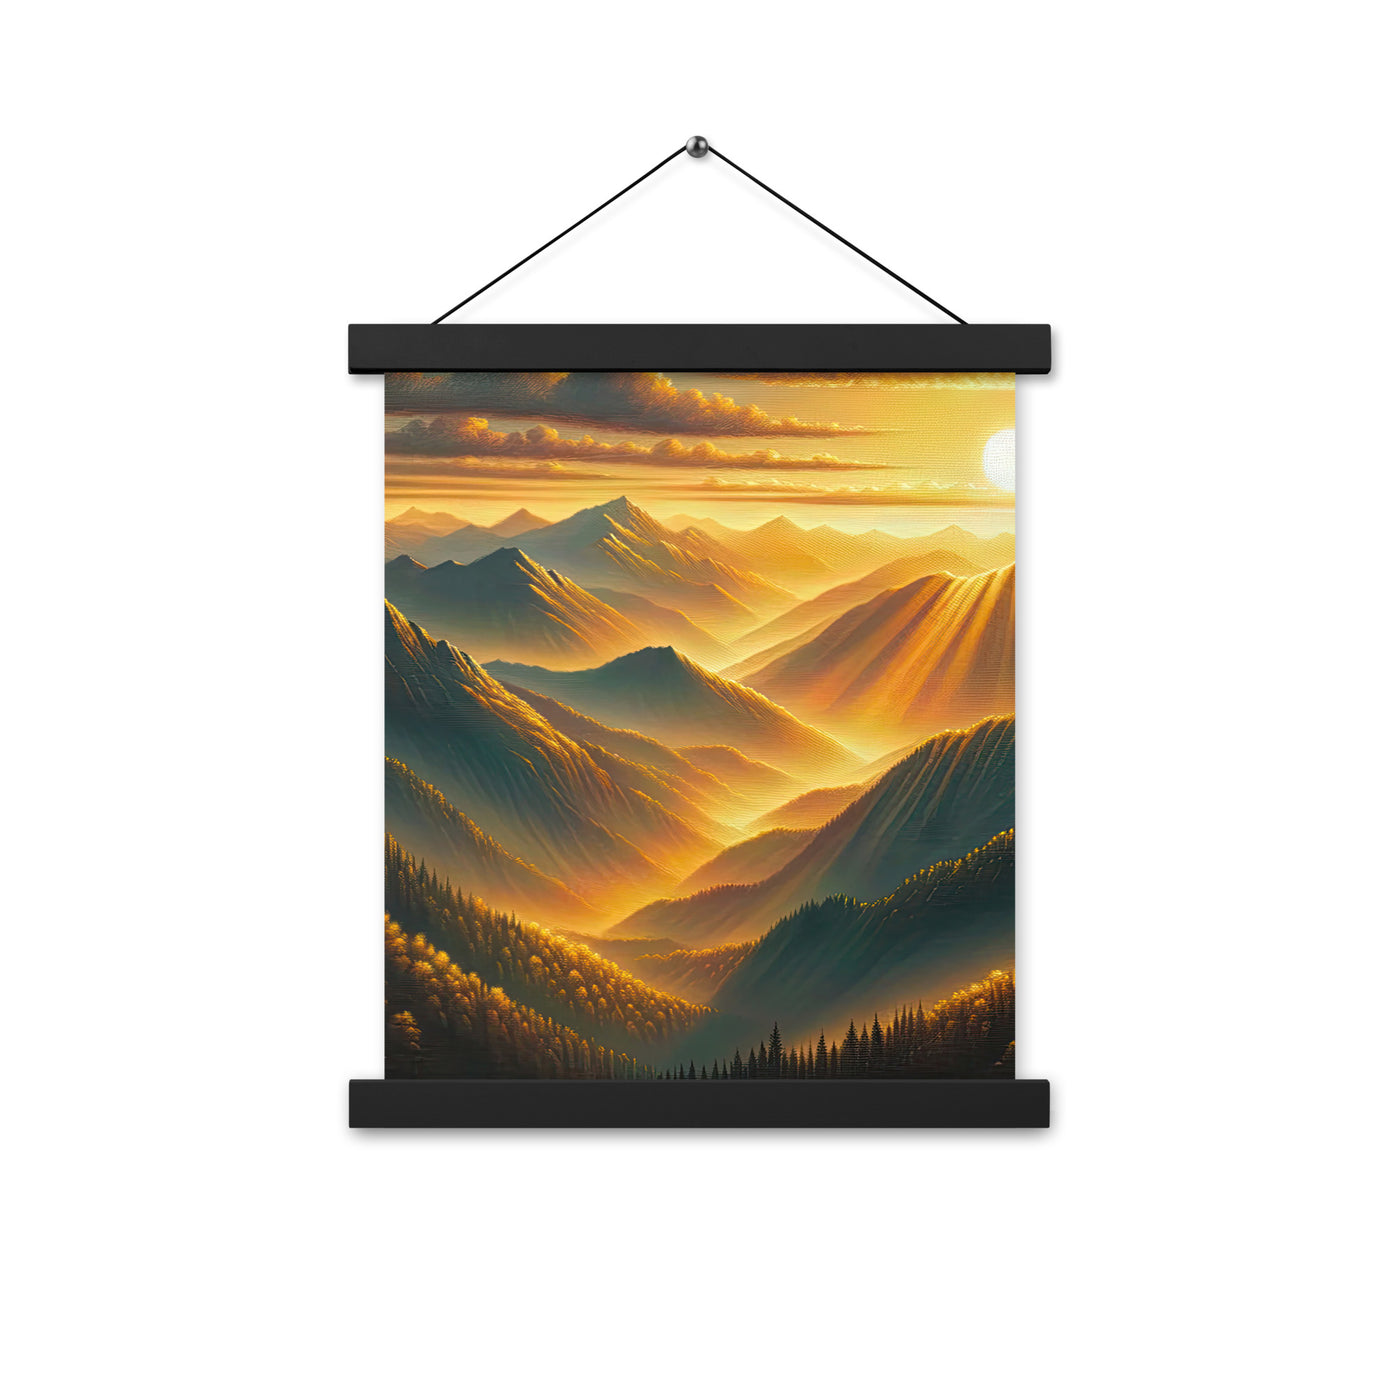 Ölgemälde der Berge in der goldenen Stunde, Sonnenuntergang über warmer Landschaft - Premium Poster mit Aufhängung berge xxx yyy zzz 27.9 x 35.6 cm